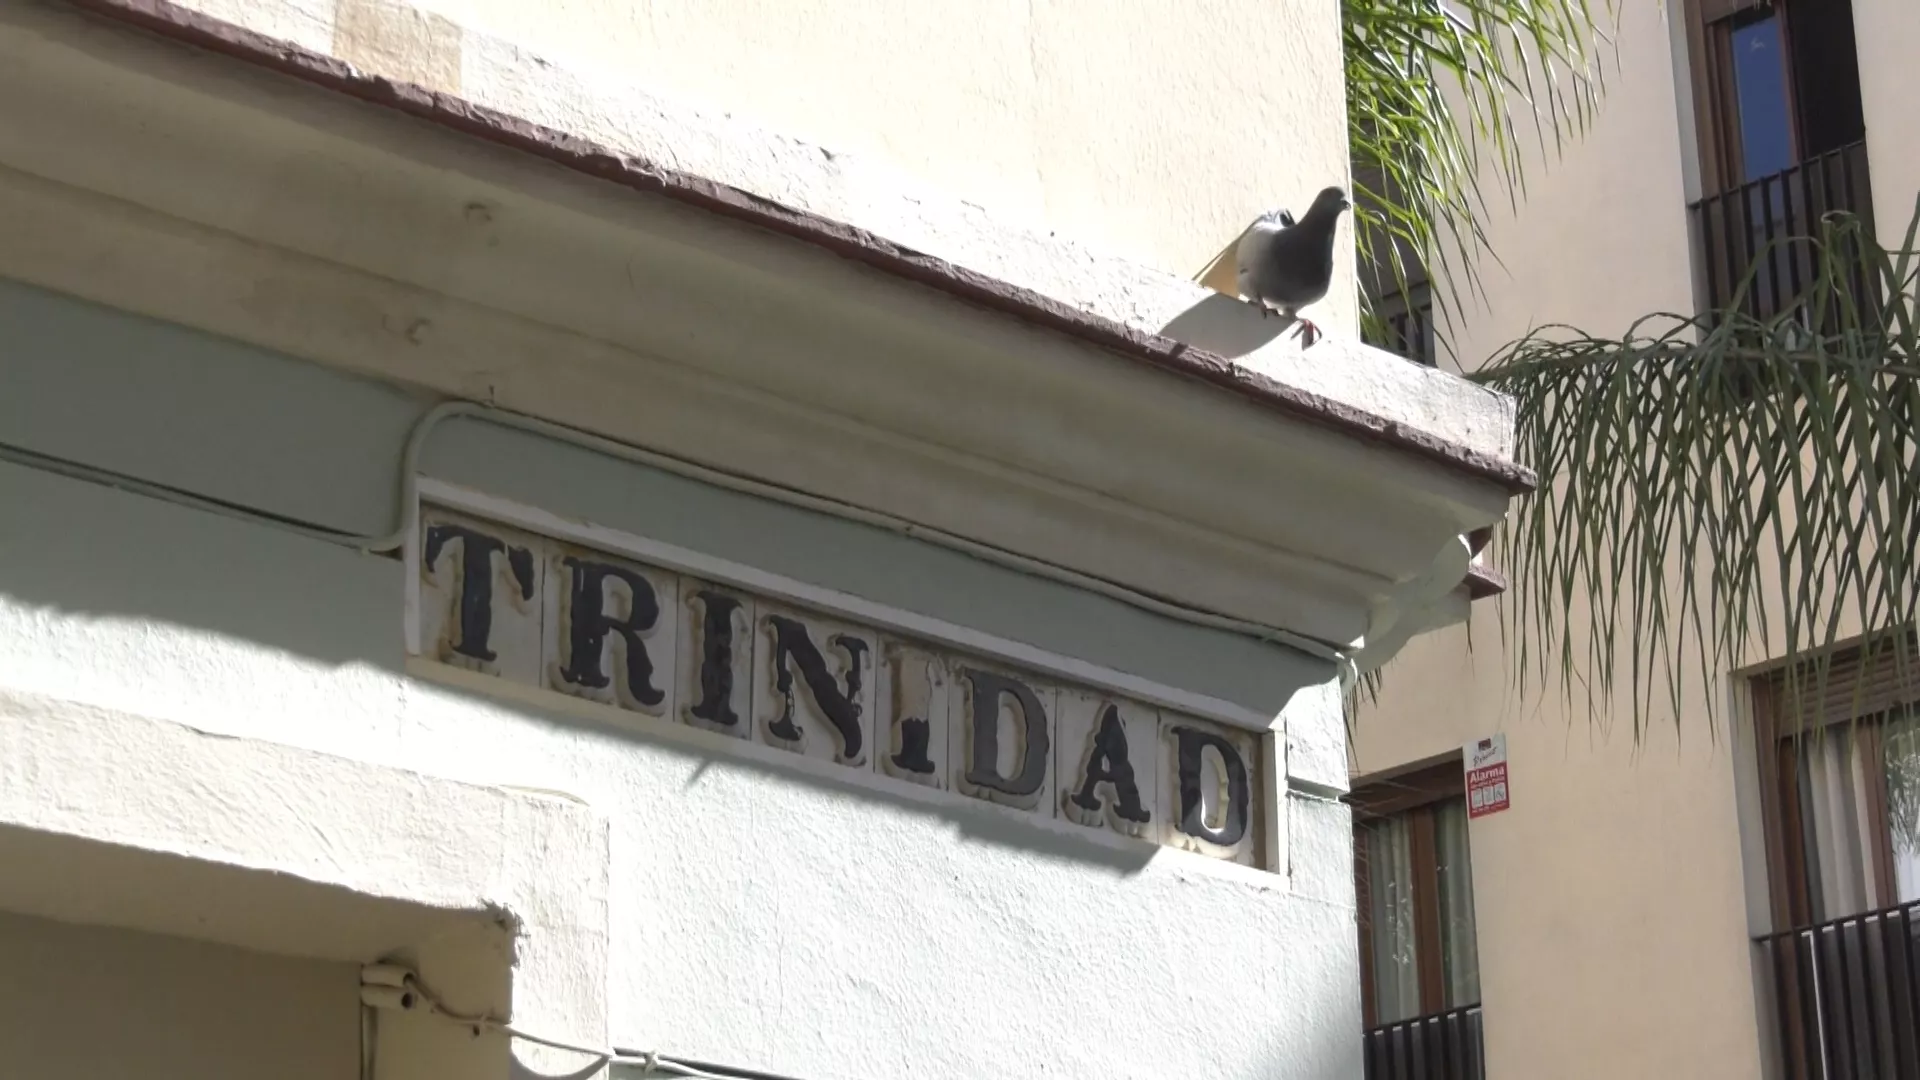 Una vivienda de la calle Trinidad era uno de los ejes de venta de rebujito en el centro 